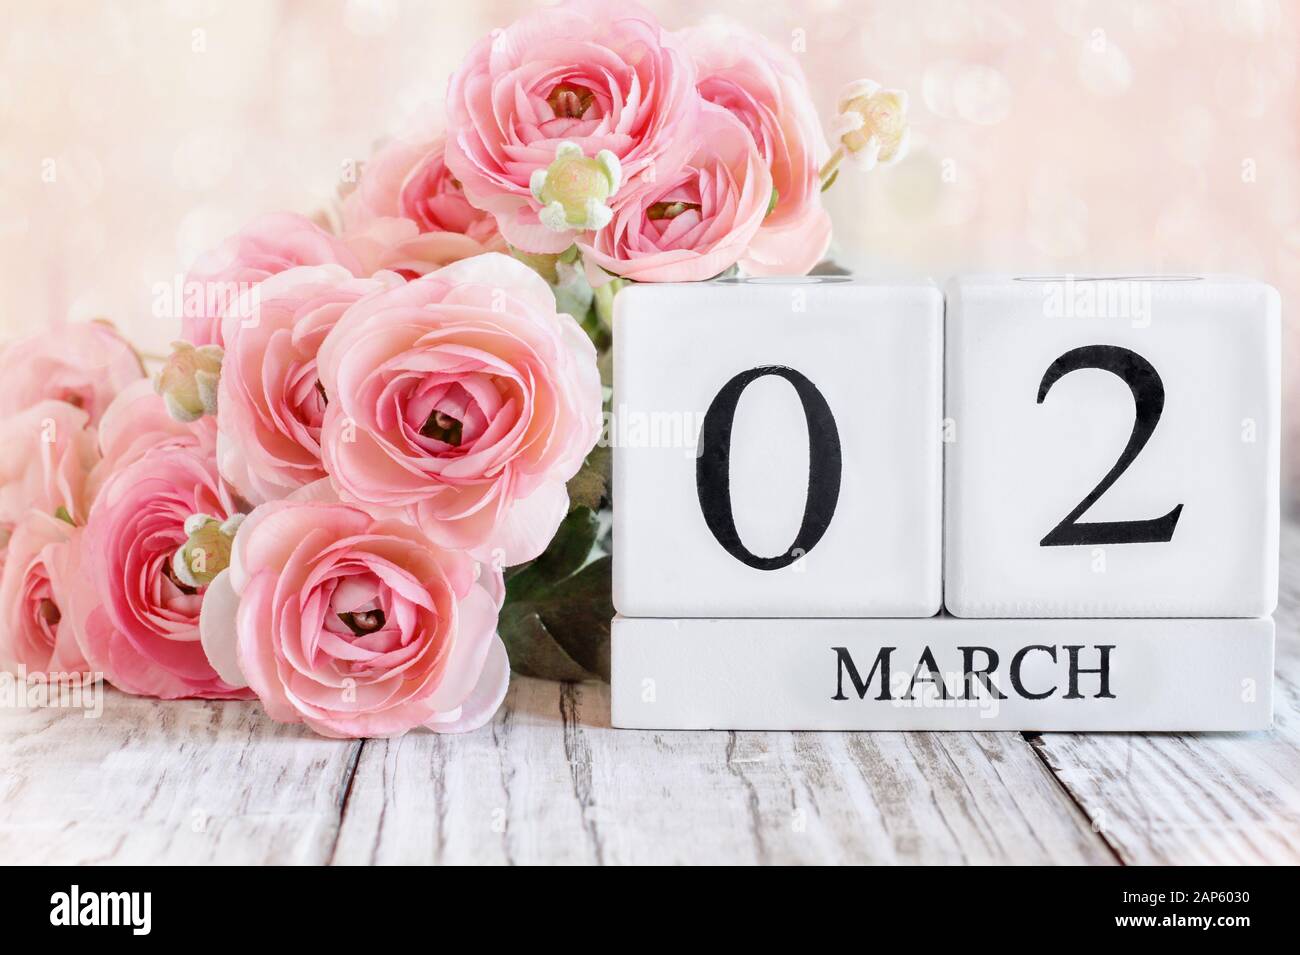 Bloques de calendario de madera blanca con la fecha de marzo de 02 y flores ranunculus rosadas sobre una mesa de madera. Enfoque selectivo con fondo difuminado. Foto de stock